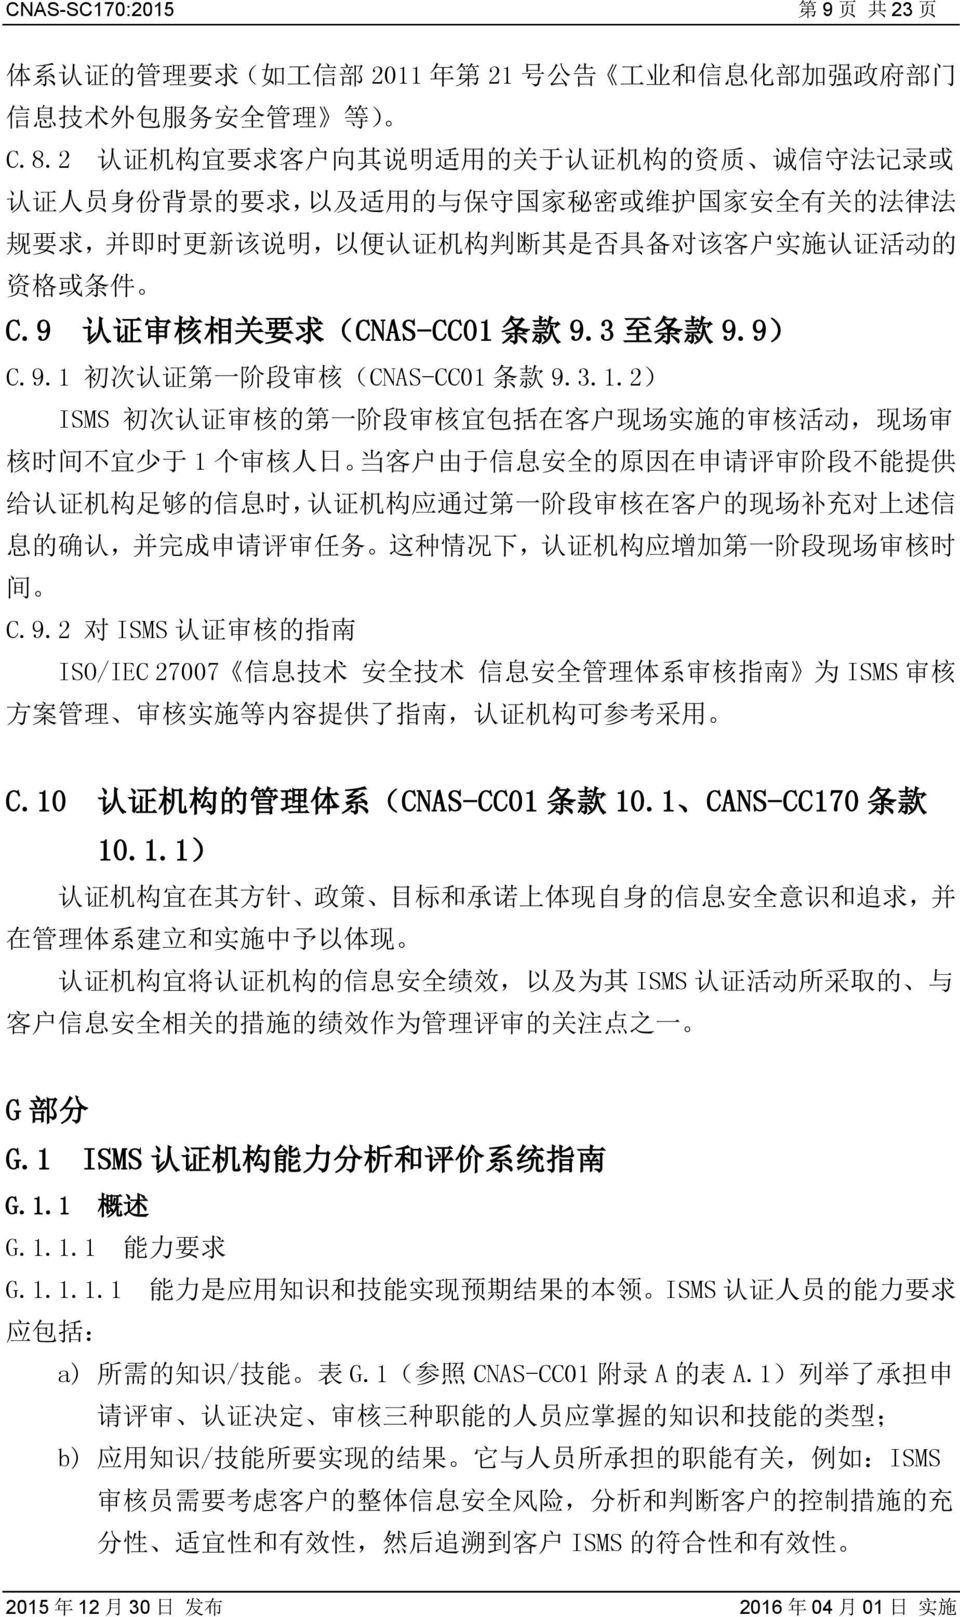 施 认 证 活 动 的 资 格 或 条 件 C.9 认 证 审 核 相 关 要 求 (CNAS-CC01 